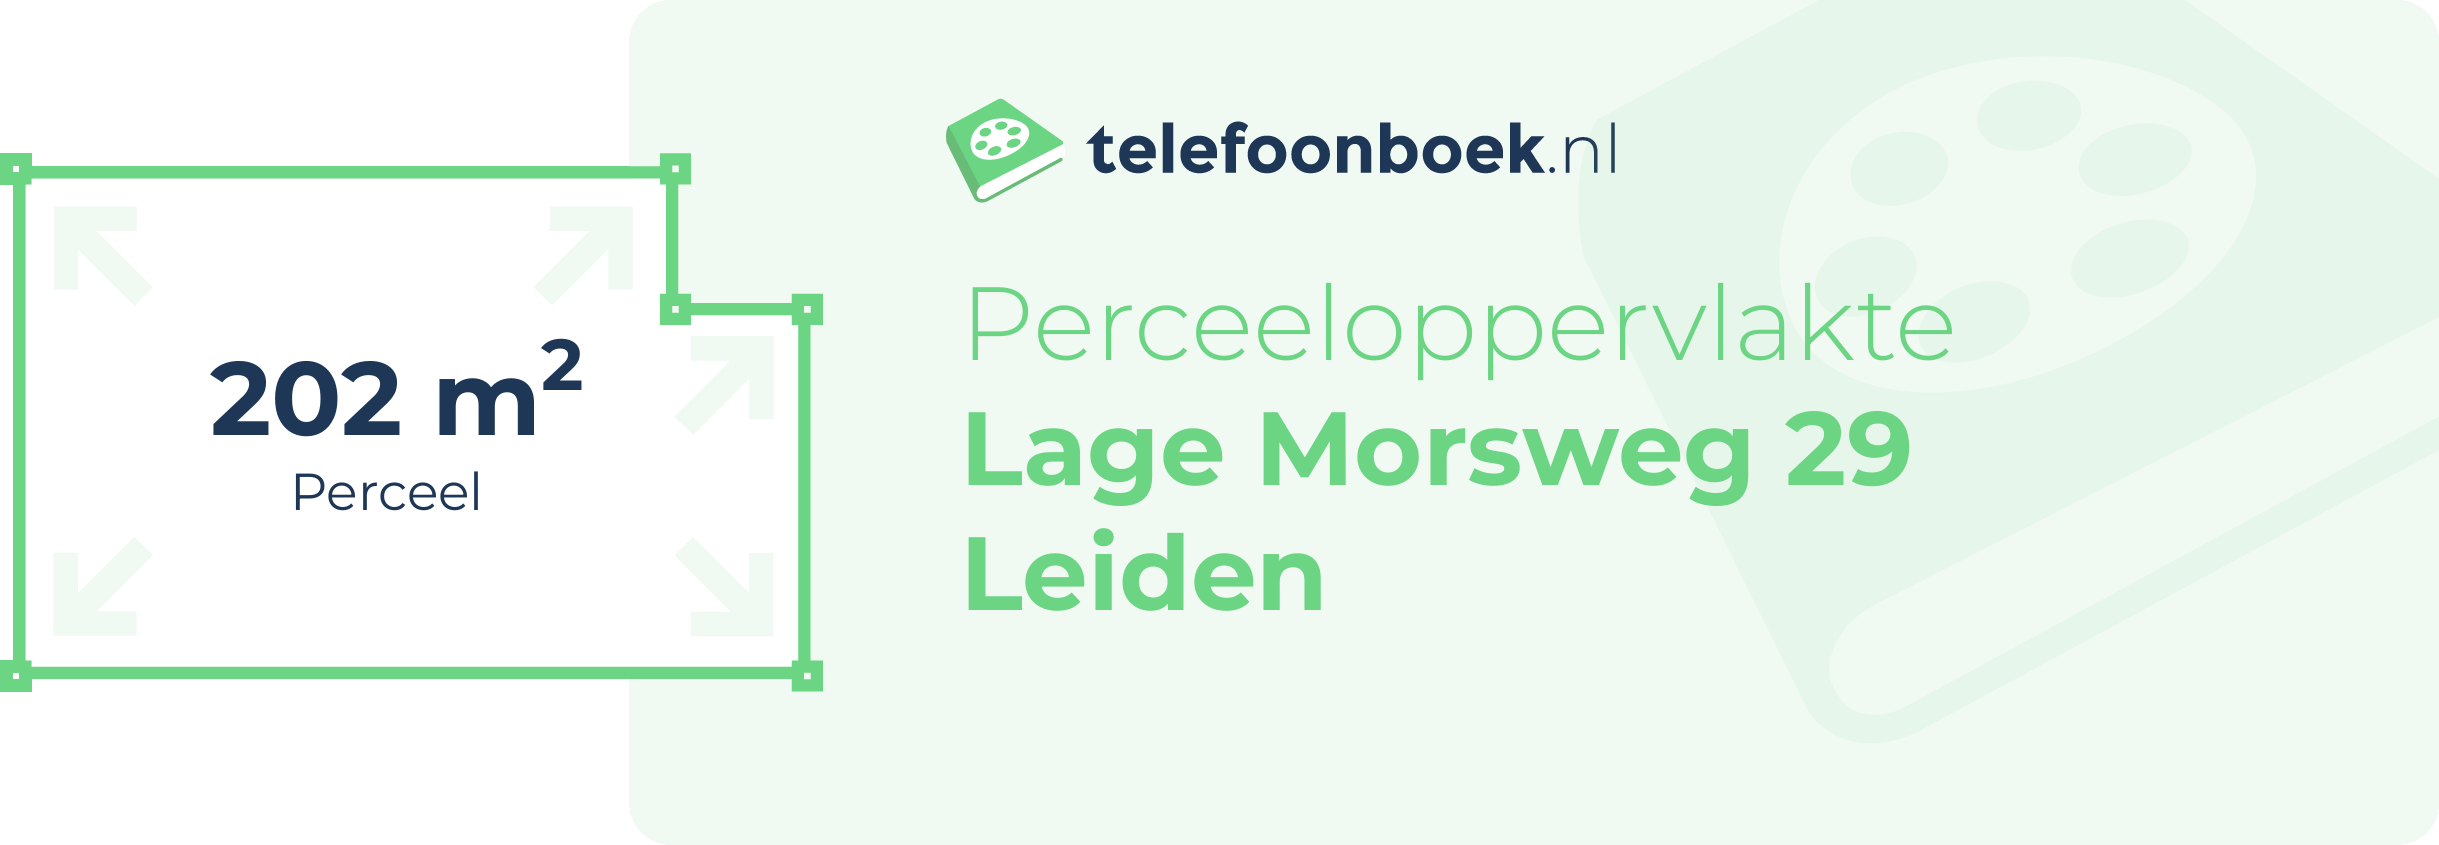 Perceeloppervlakte Lage Morsweg 29 Leiden